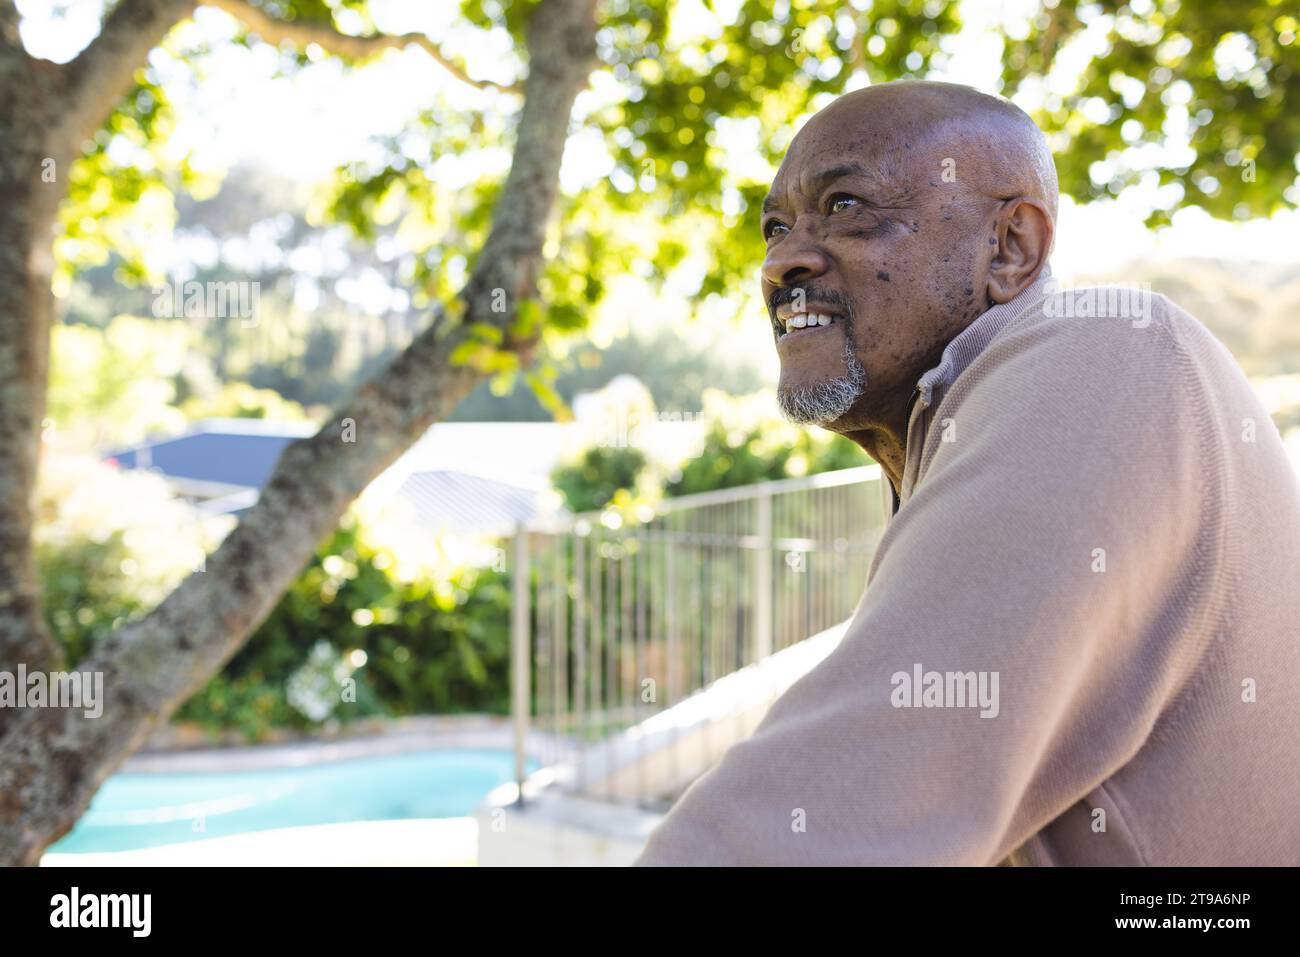 Glücklicher afroamerikaner auf der Sonnenterrasse. Lebensstil, Ruhestand, Seniorenleben, Natur und häusliches Leben, unverändert. Stockfoto